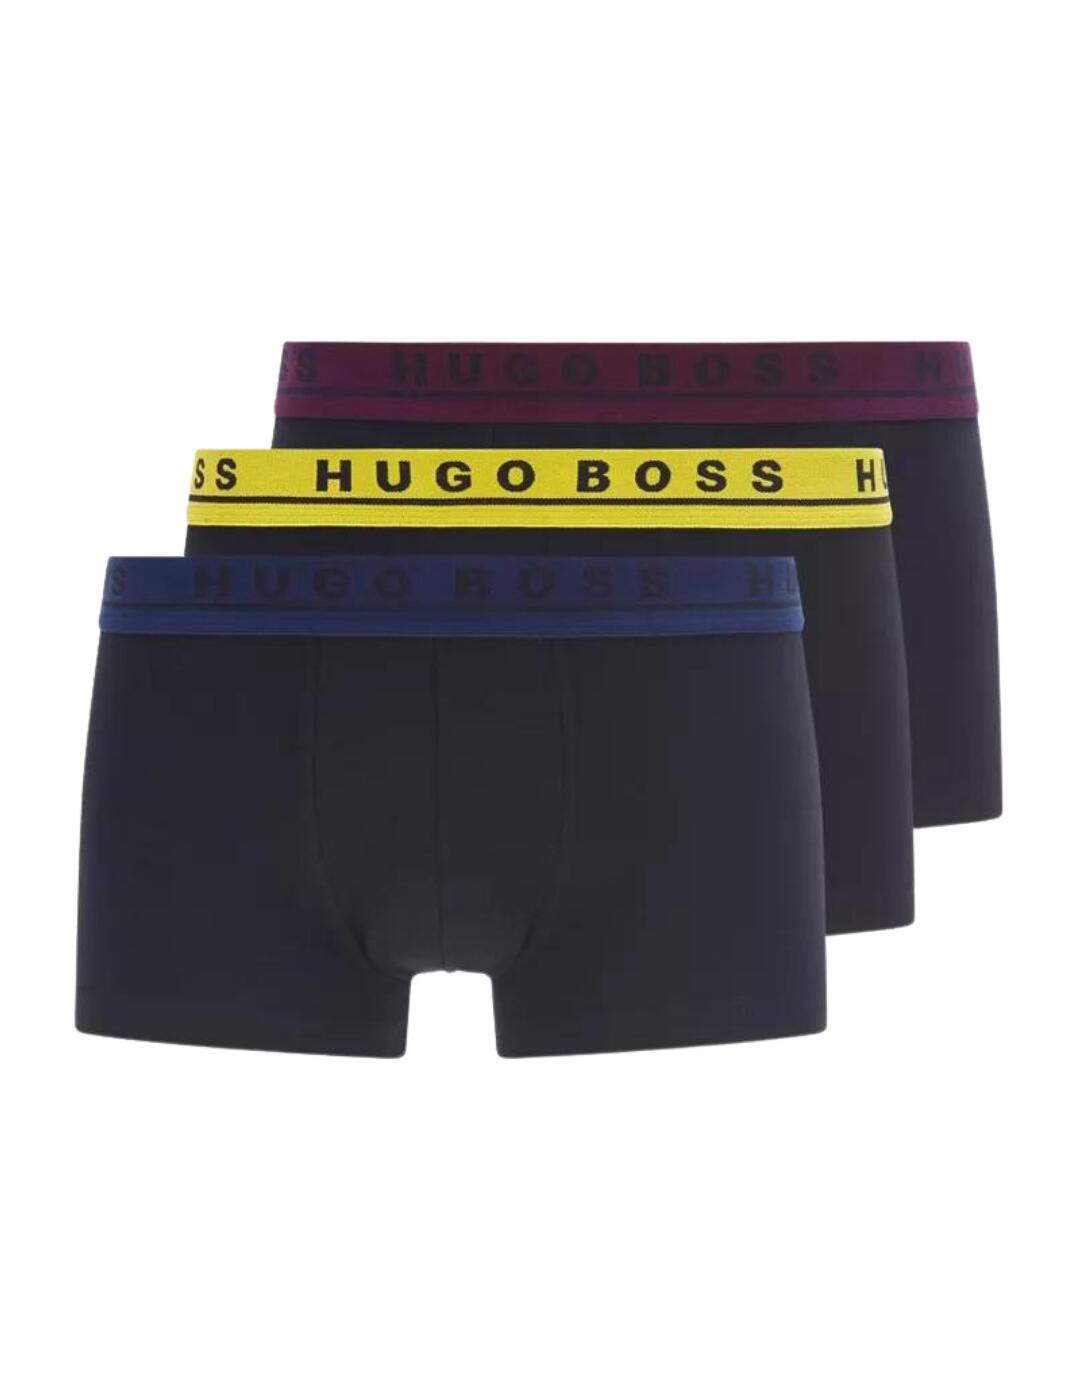 Hugo Boss Boxers 3 Pack Blue/Yellow/Purple